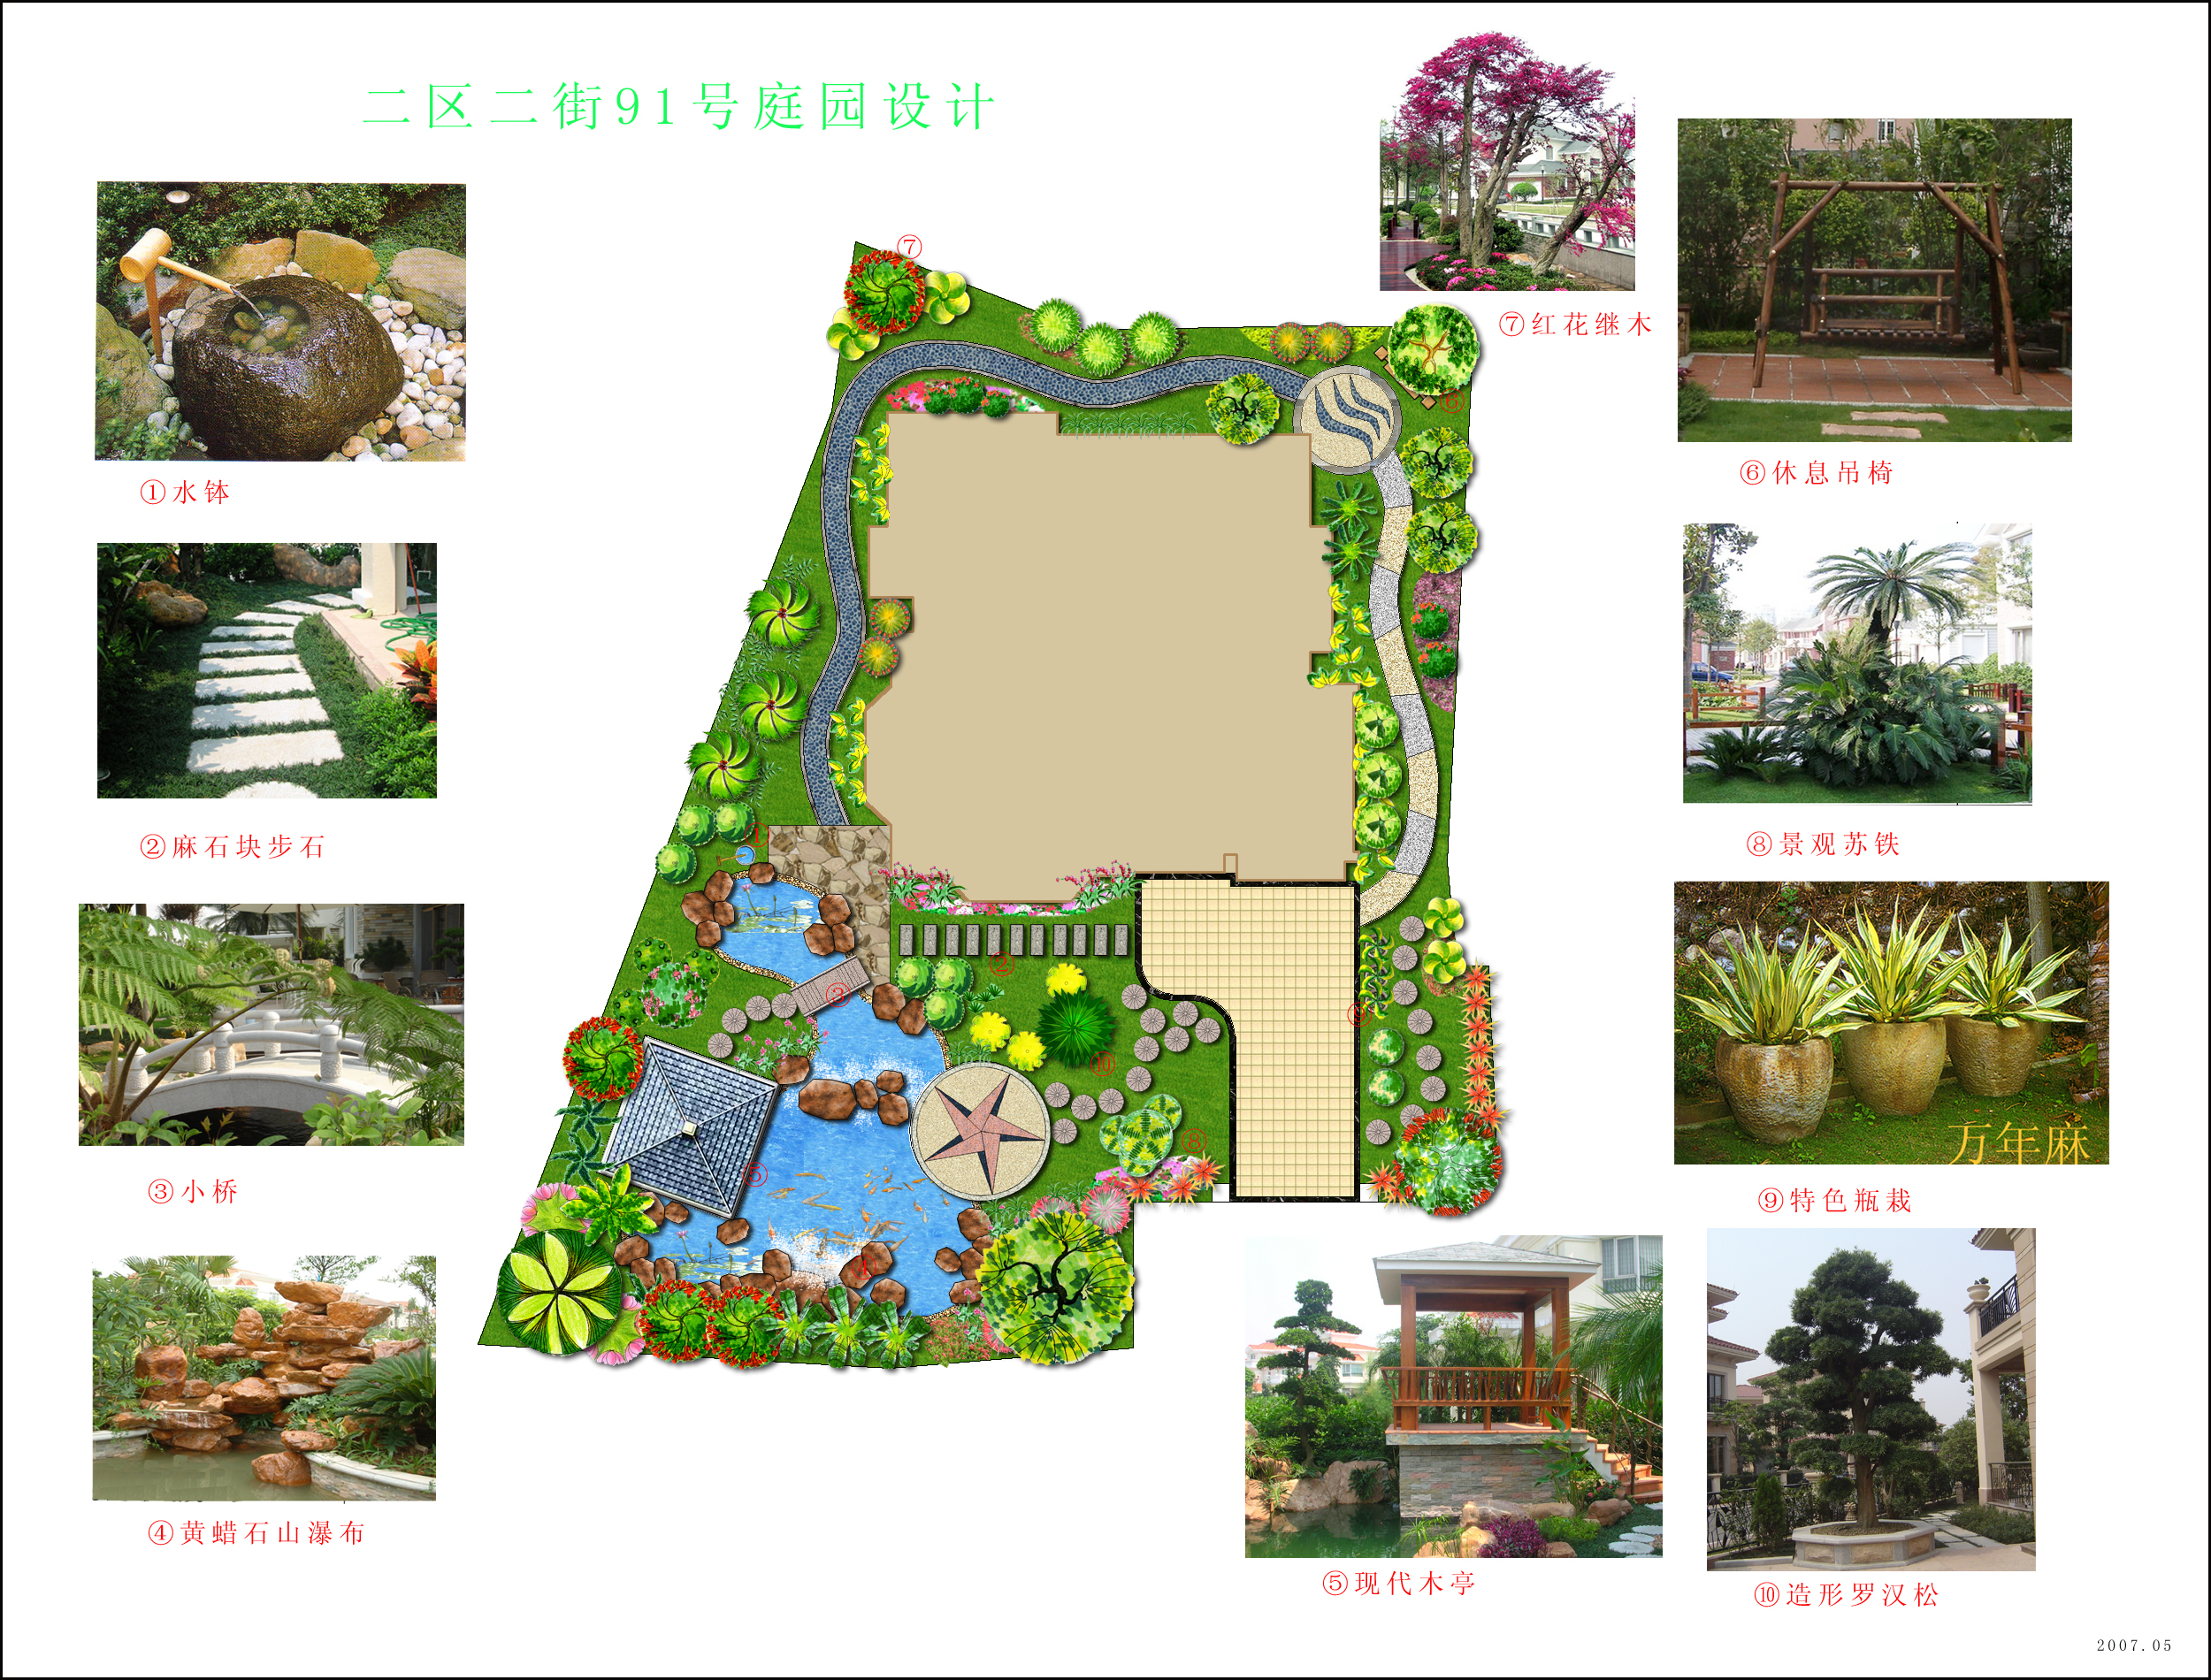 刚几个别墅的庭园景观设计